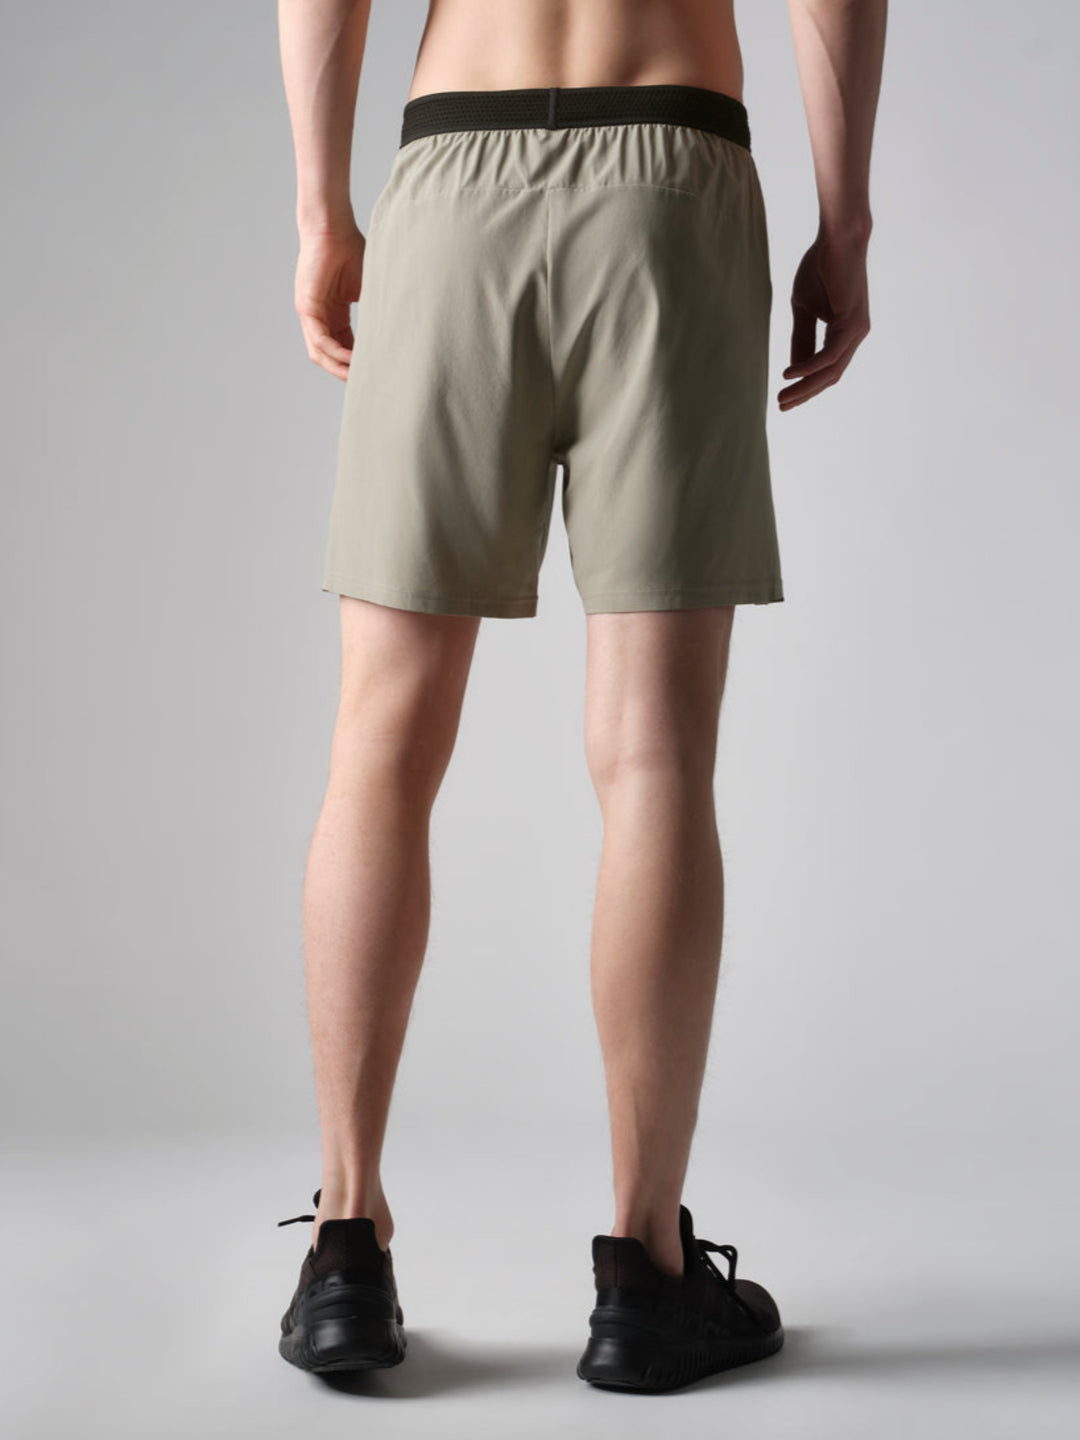 Rhone Swift Shorts 6"